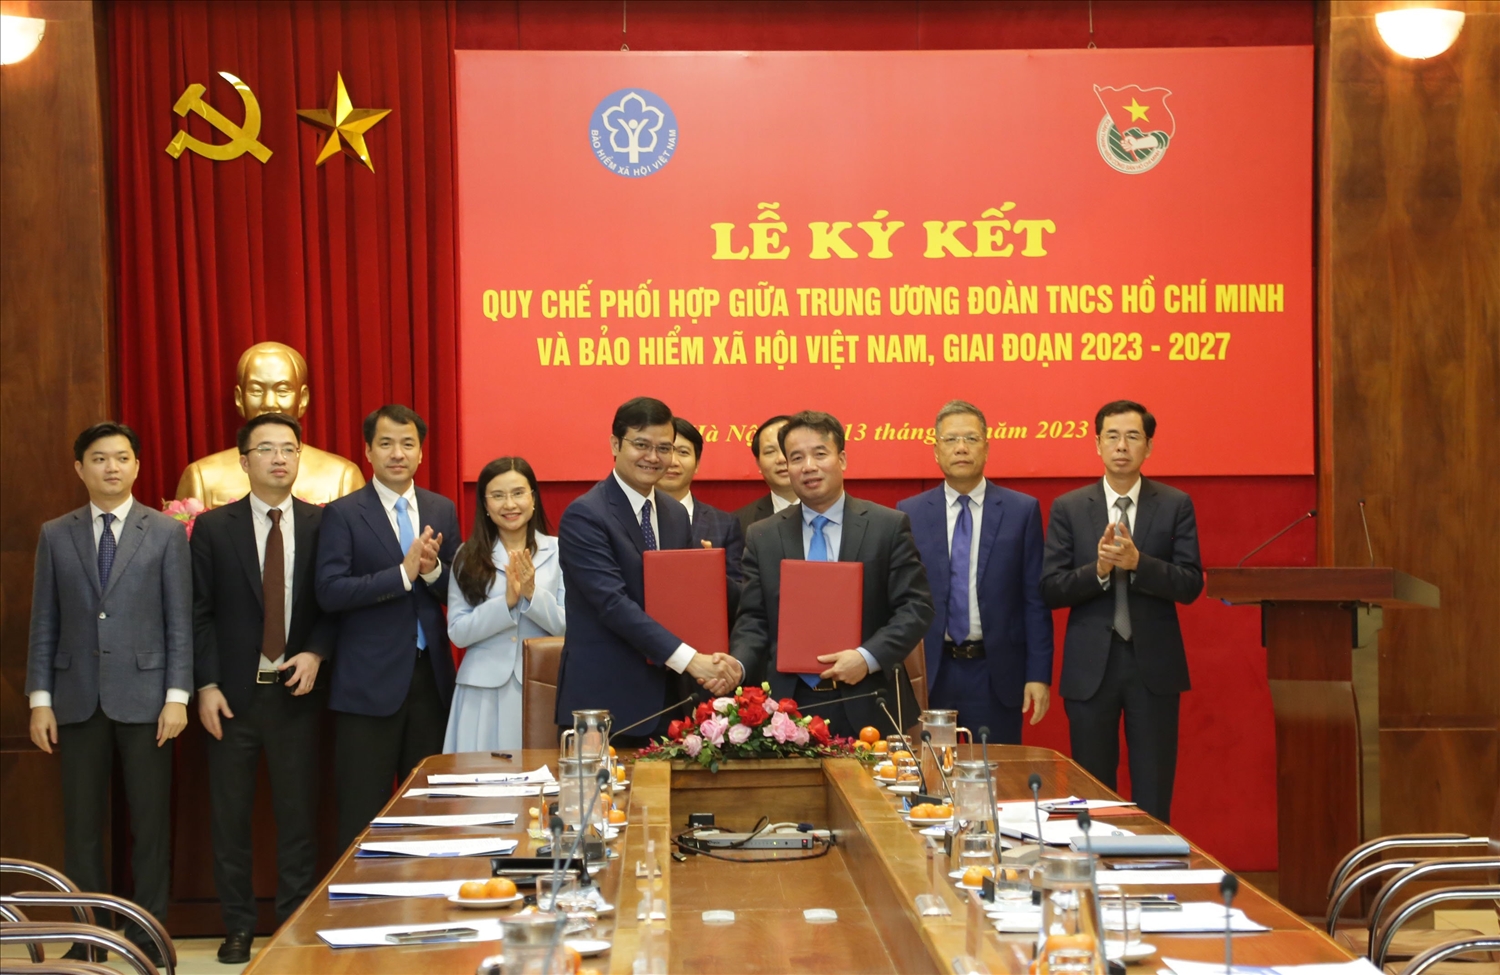 Dưới sự chứng kiến của các đại biểu, Tổng Giám đốc Nguyễn Thế Mạnh và Bí thư thứ Nhất Bùi Quang Huy đã ký Quy chế phối hợp công tác giữa hai cơ quan